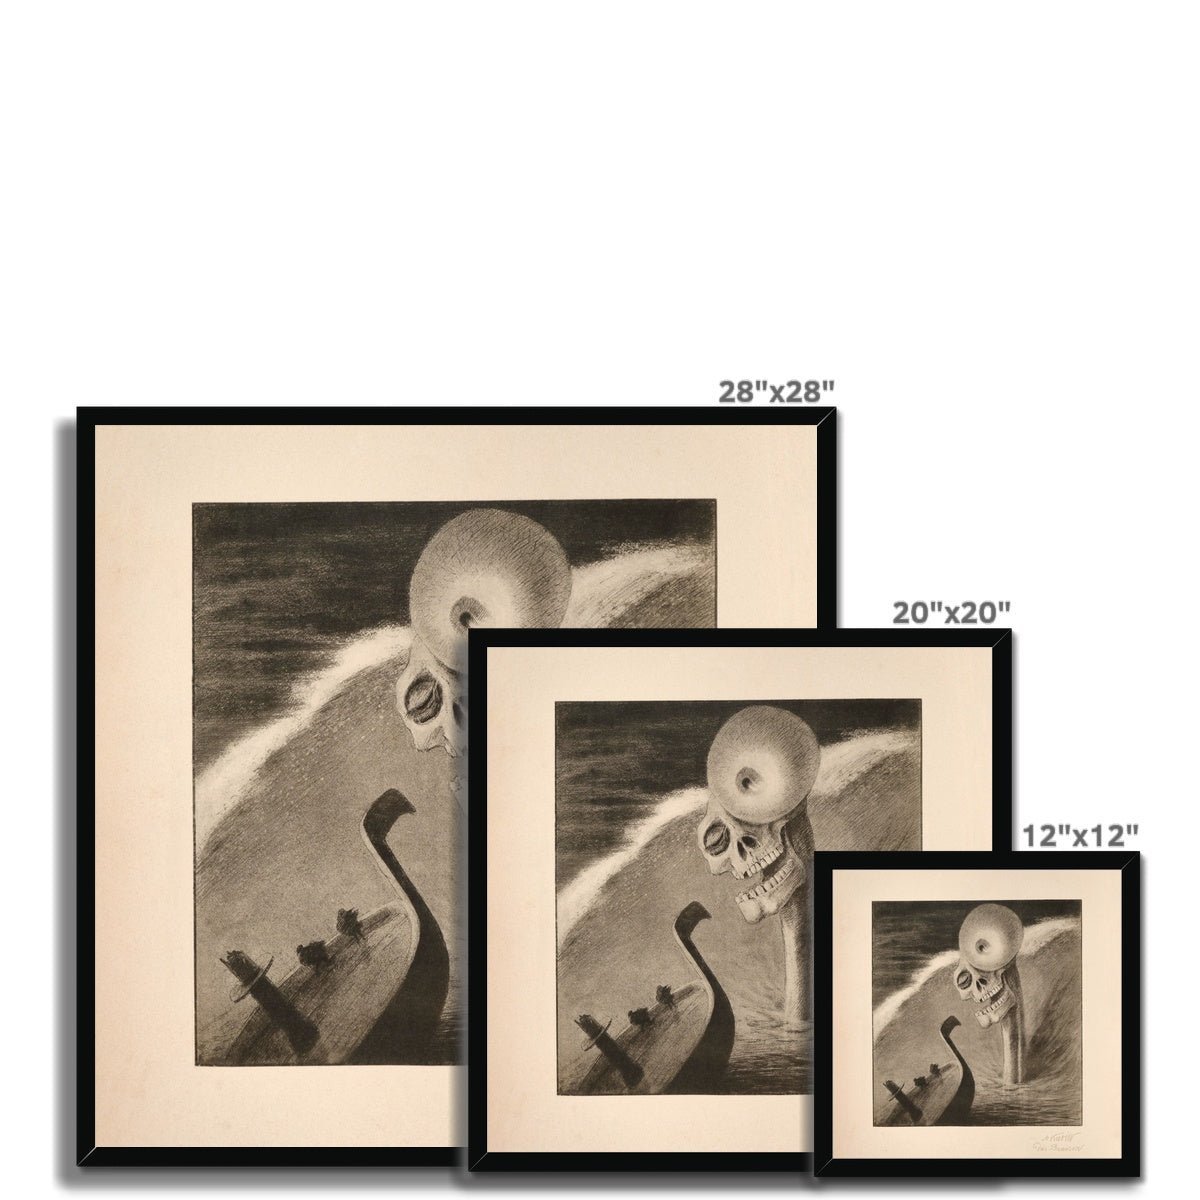 Framed Print Alfred Kubin Oblivion Symbolist Surreal Vintage Surrealist Antique Gothic Occult Framed Art Print